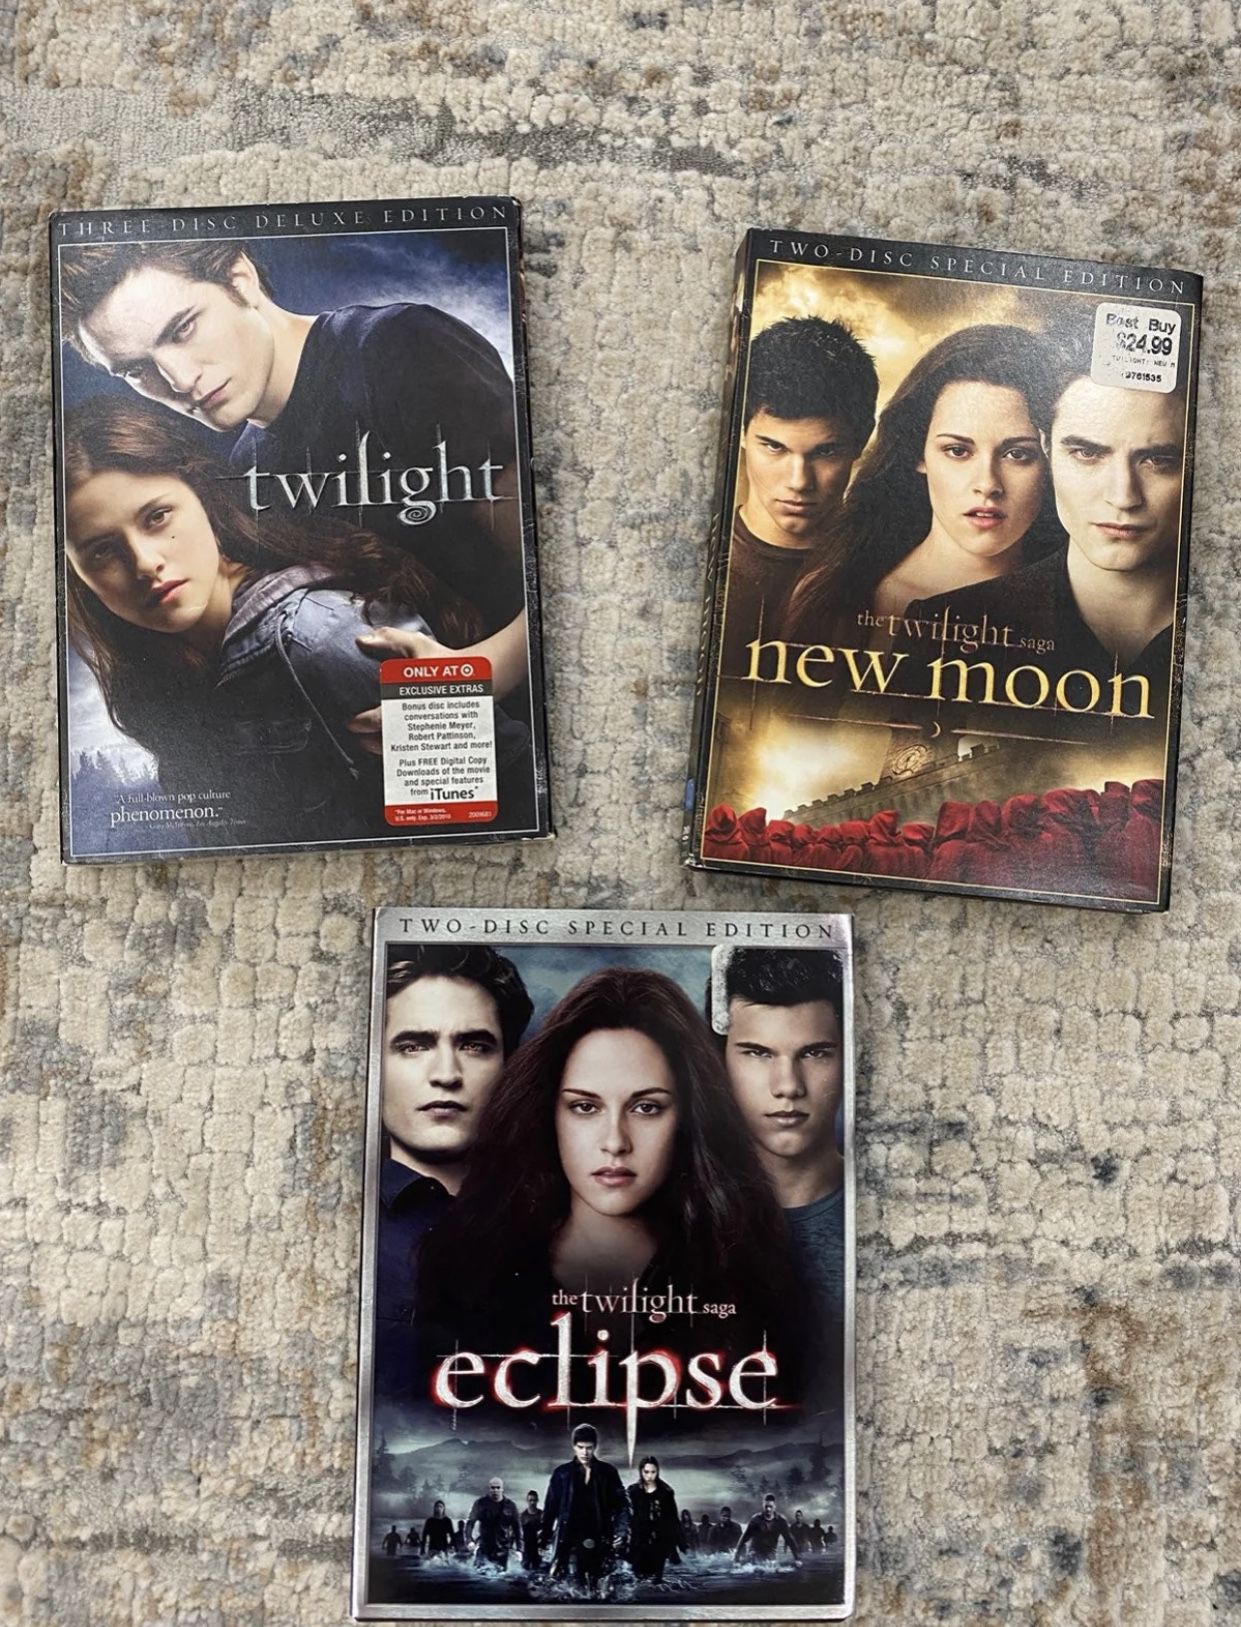 Twilight series